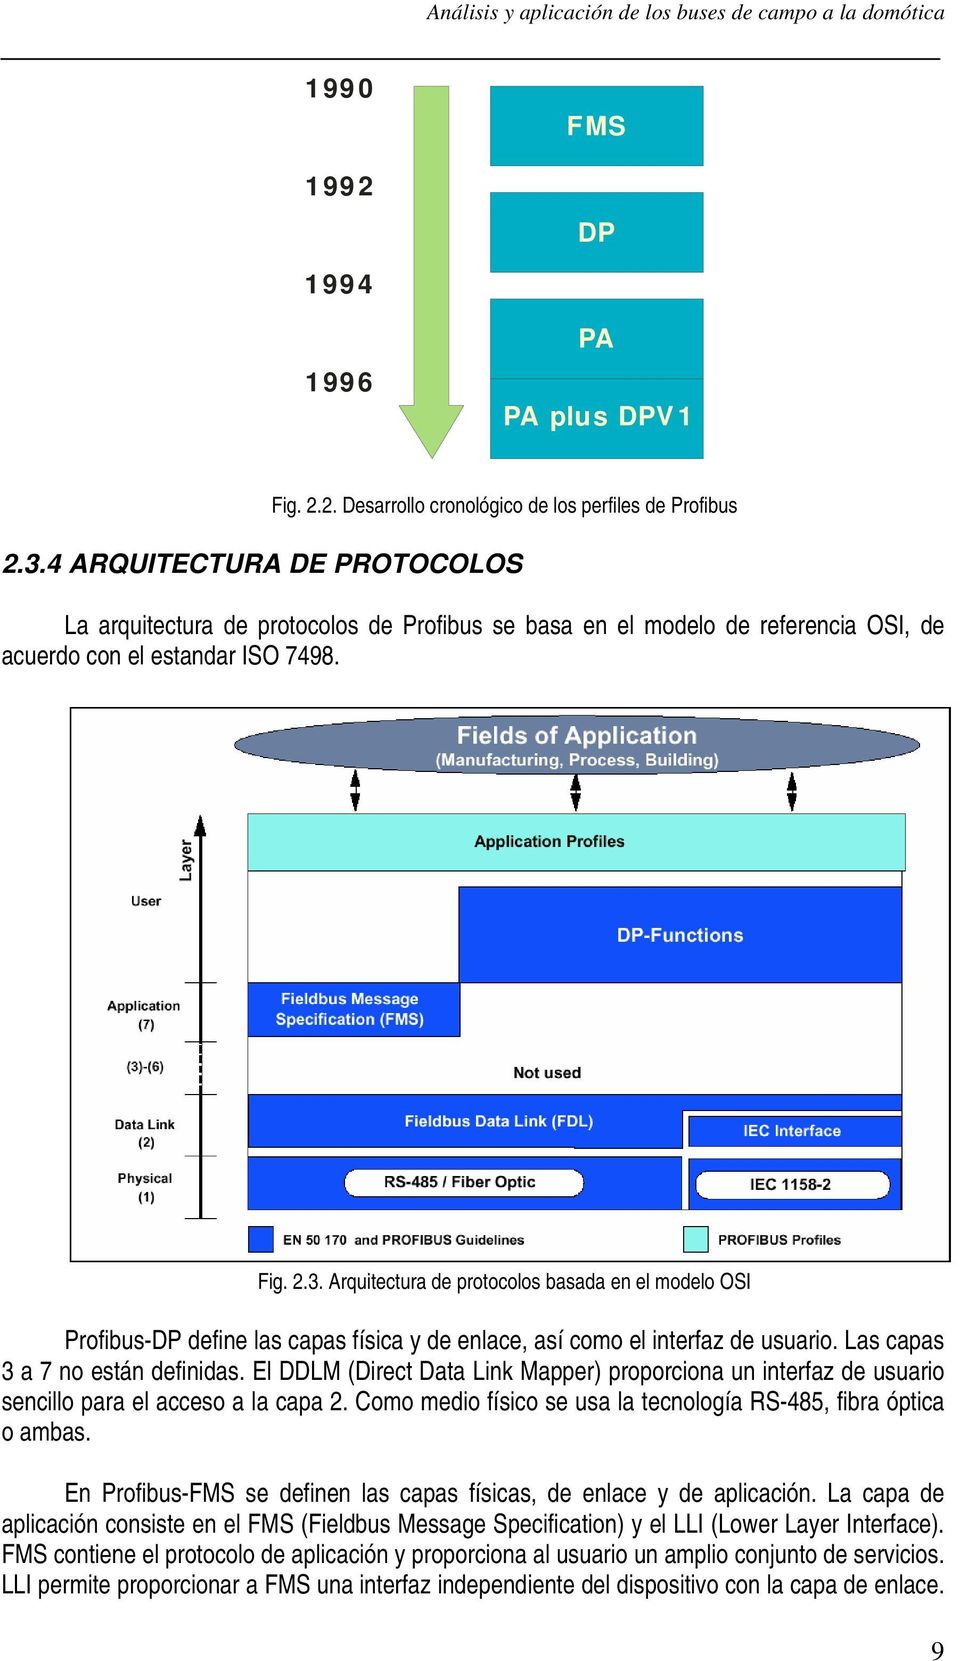 Arquitectura de protocolos basada en el modelo OSI Profibus-DP define las capas física y de enlace, así como el interfaz de usuario. Las capas 3 a 7 no están definidas.